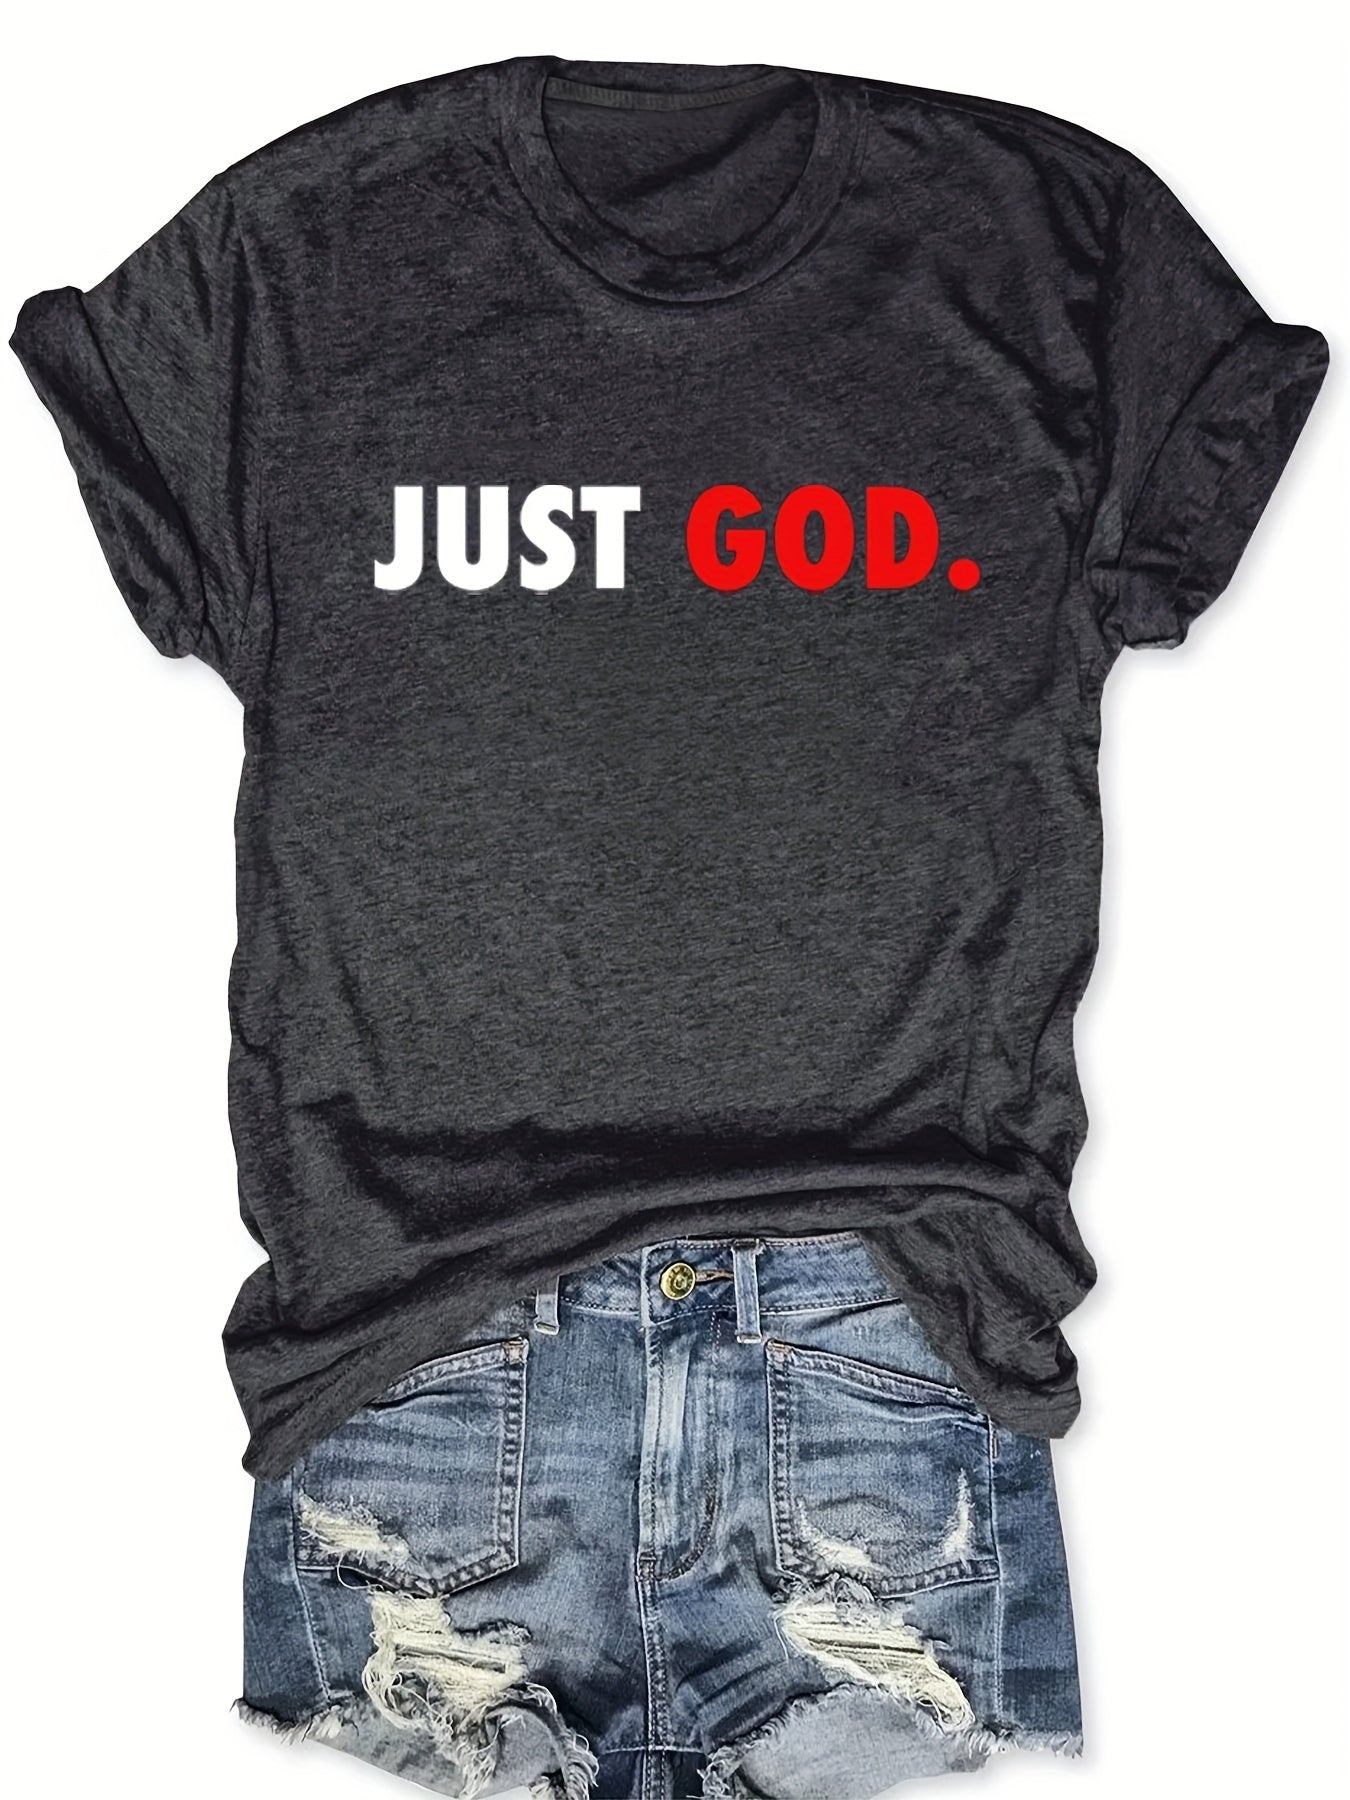 Just God Women's Christian T-shirt claimedbygoddesigns